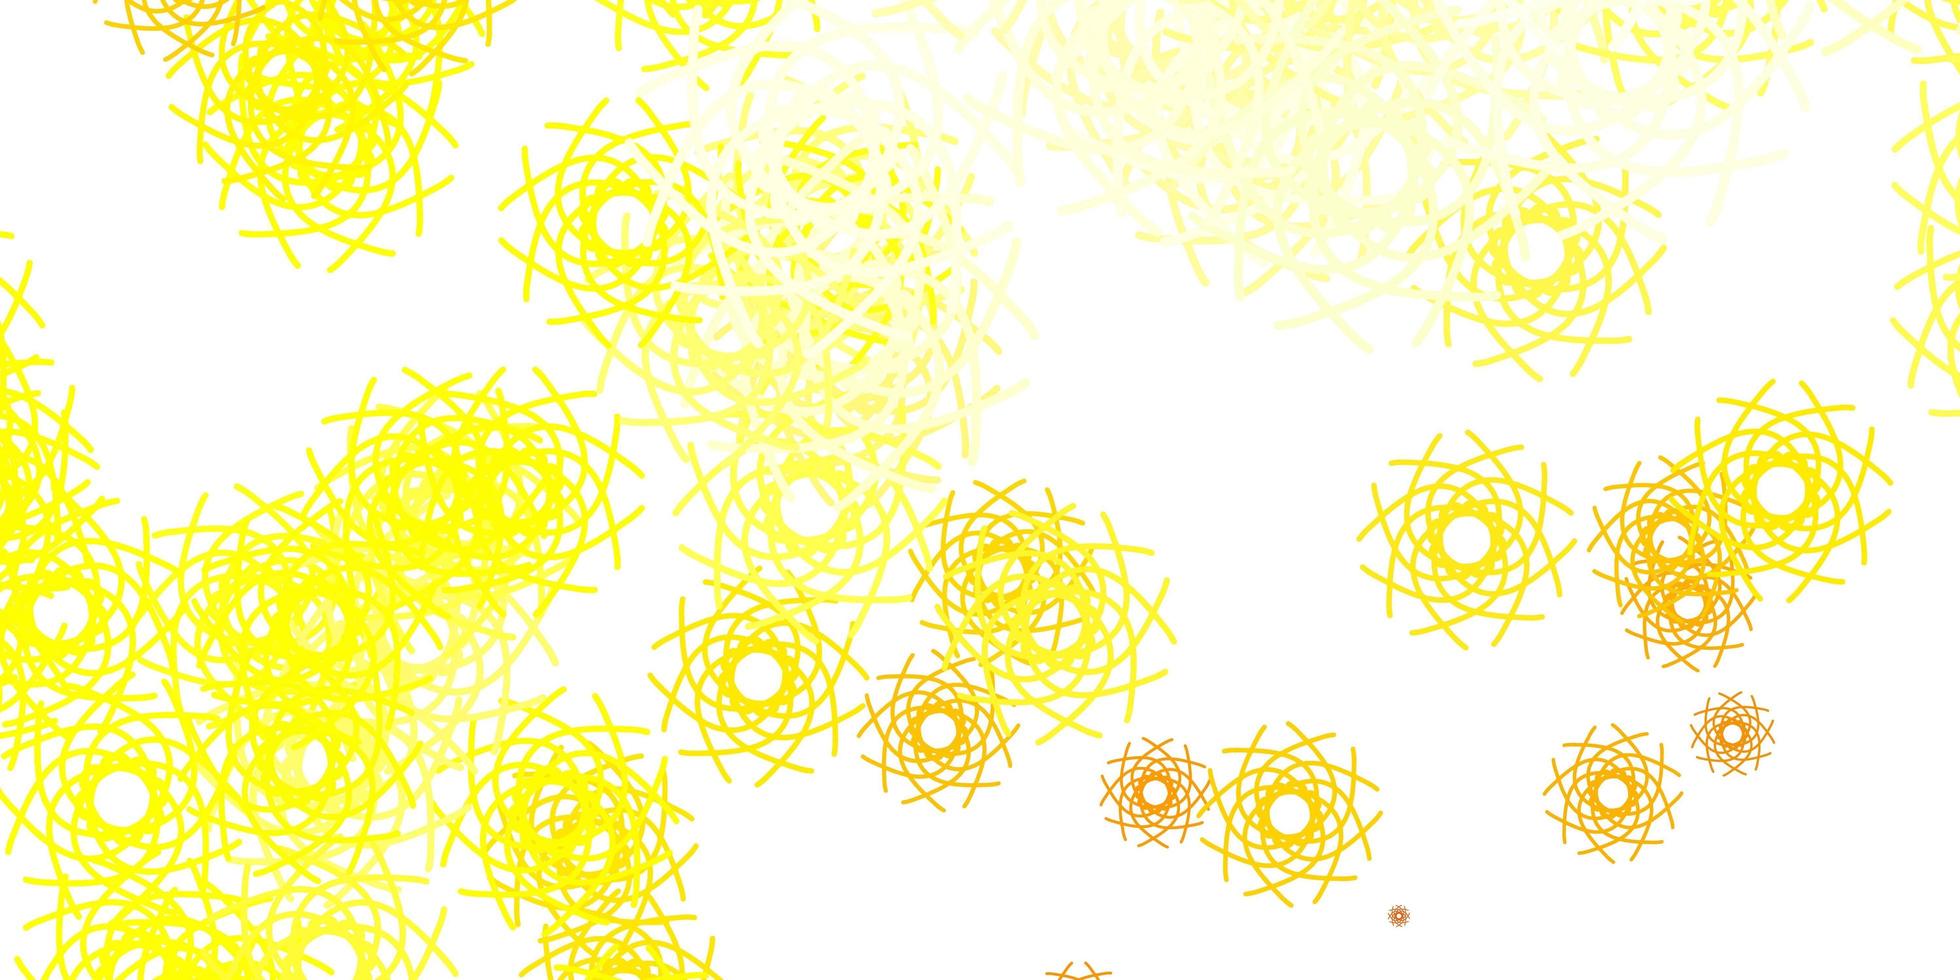 fundo amarelo claro do vetor com formas aleatórias.